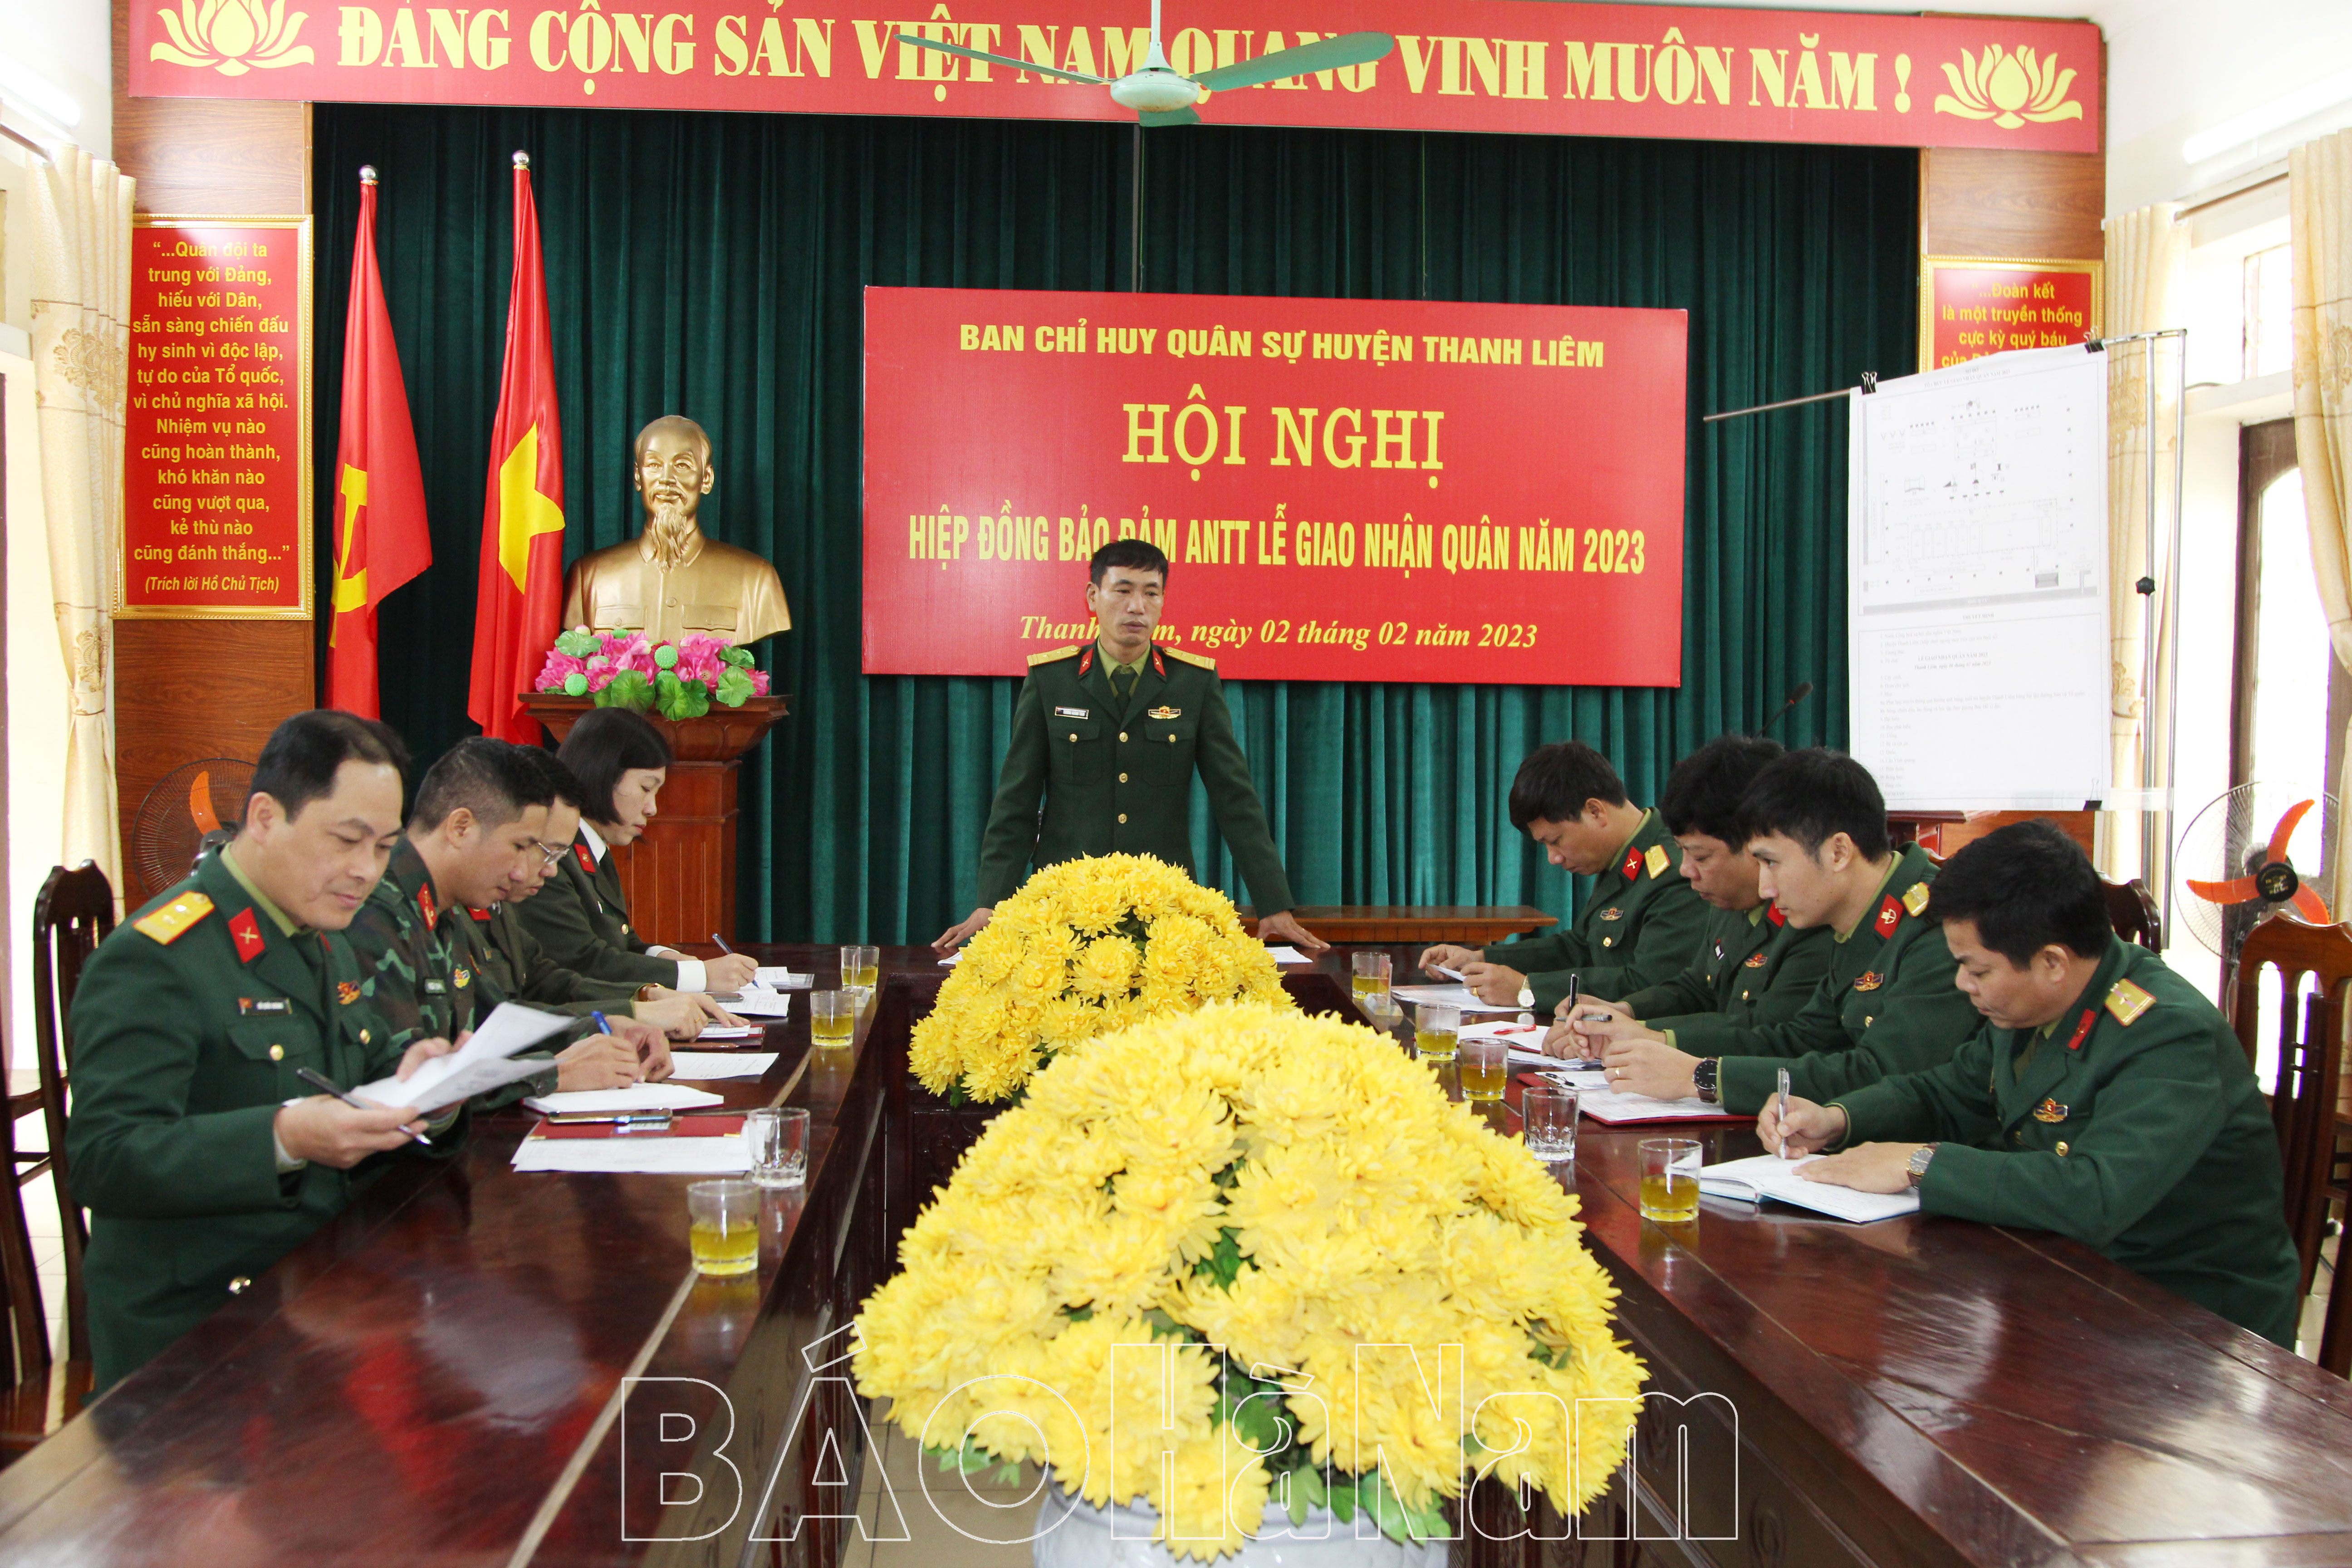 Ban CHQS huyện Thanh Liêm hiệp đồng đảm bảo ANTT Lễ giao nhận quân năm 2023